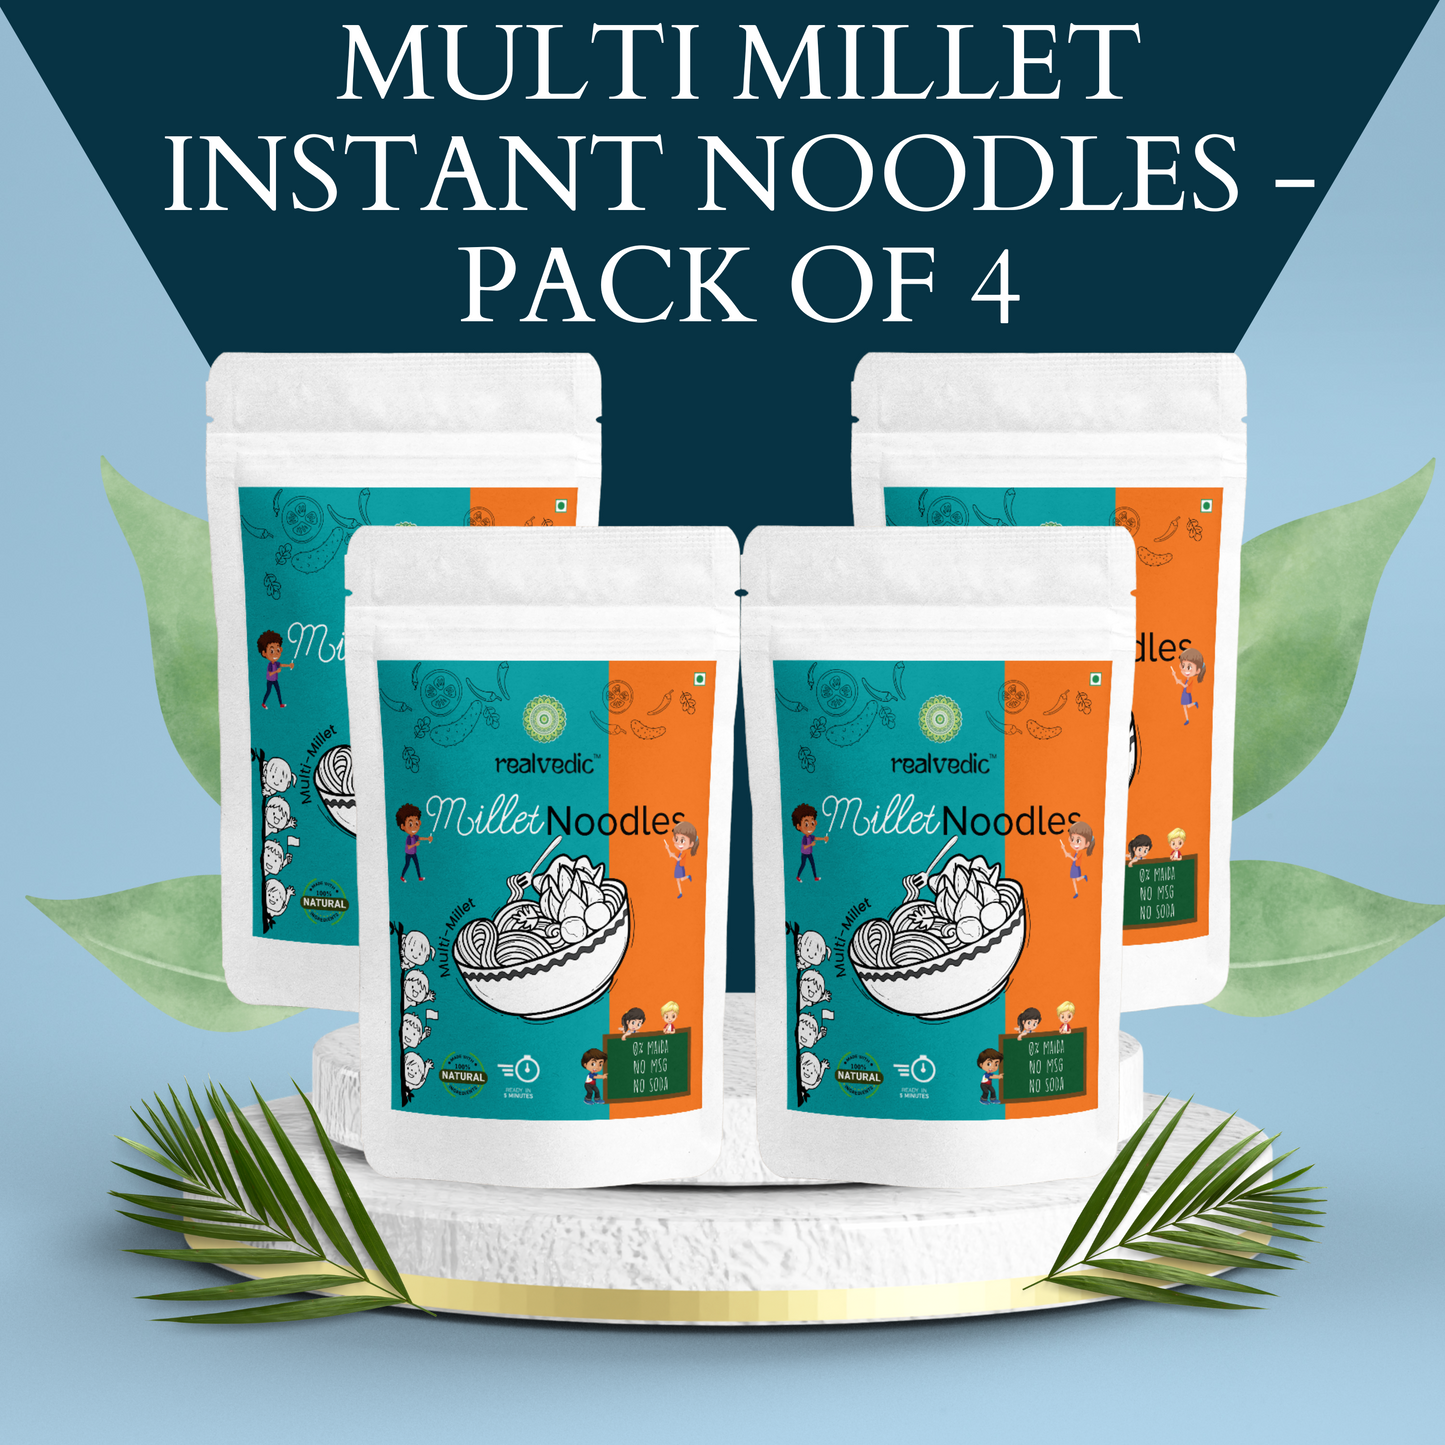 Multi Millet Instant Noodles - Pack of 4